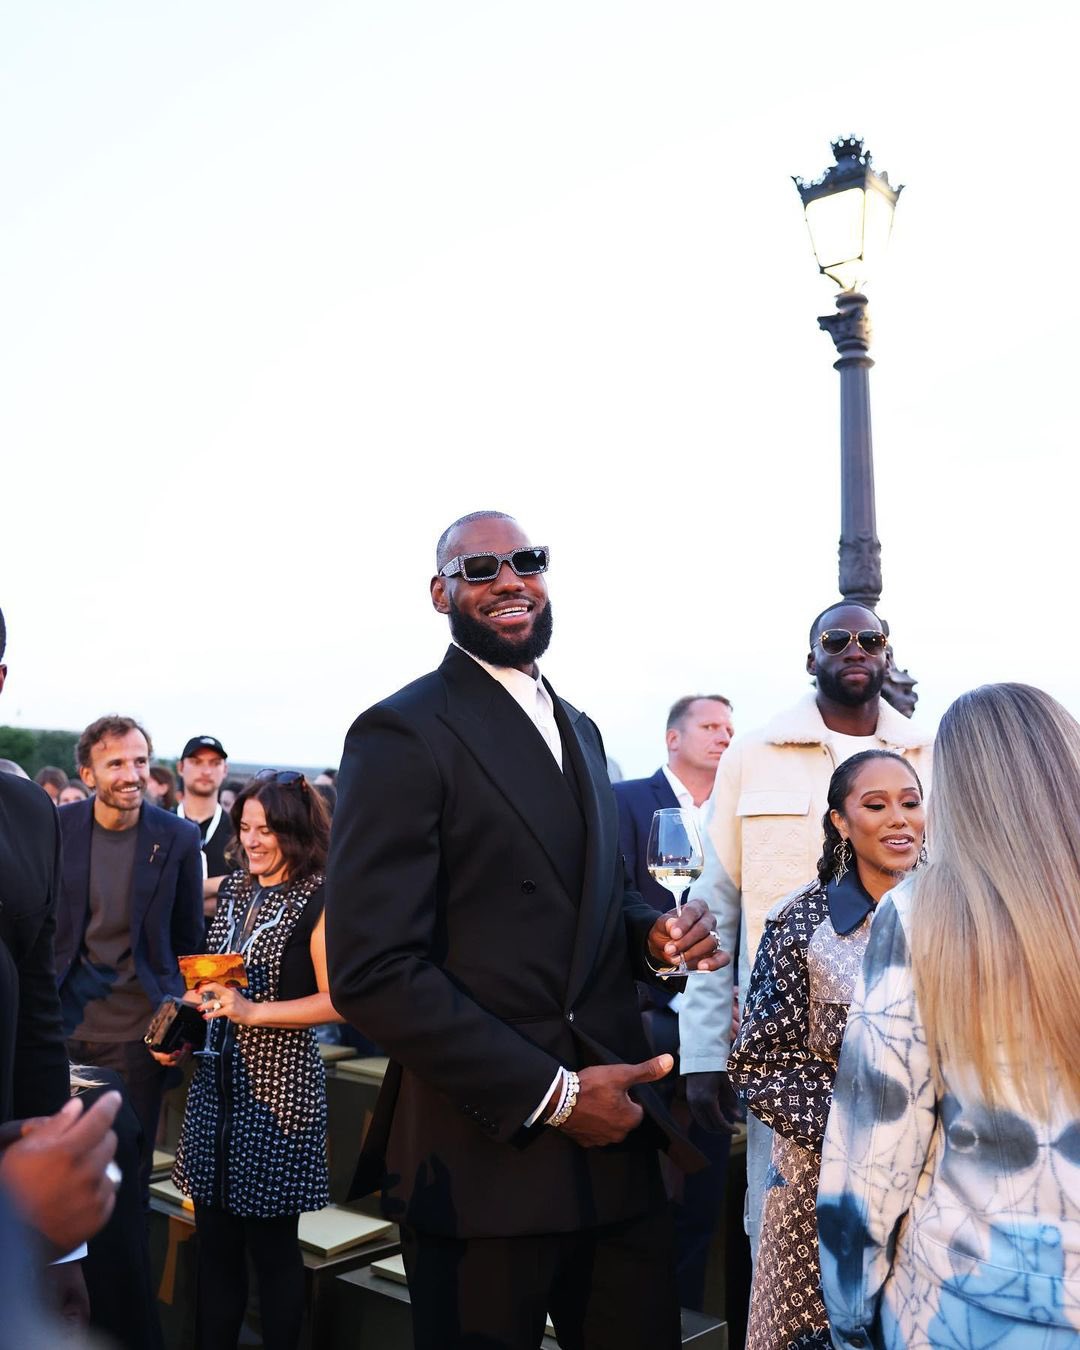 Athletes at Paris Fashion Week: LeBron James